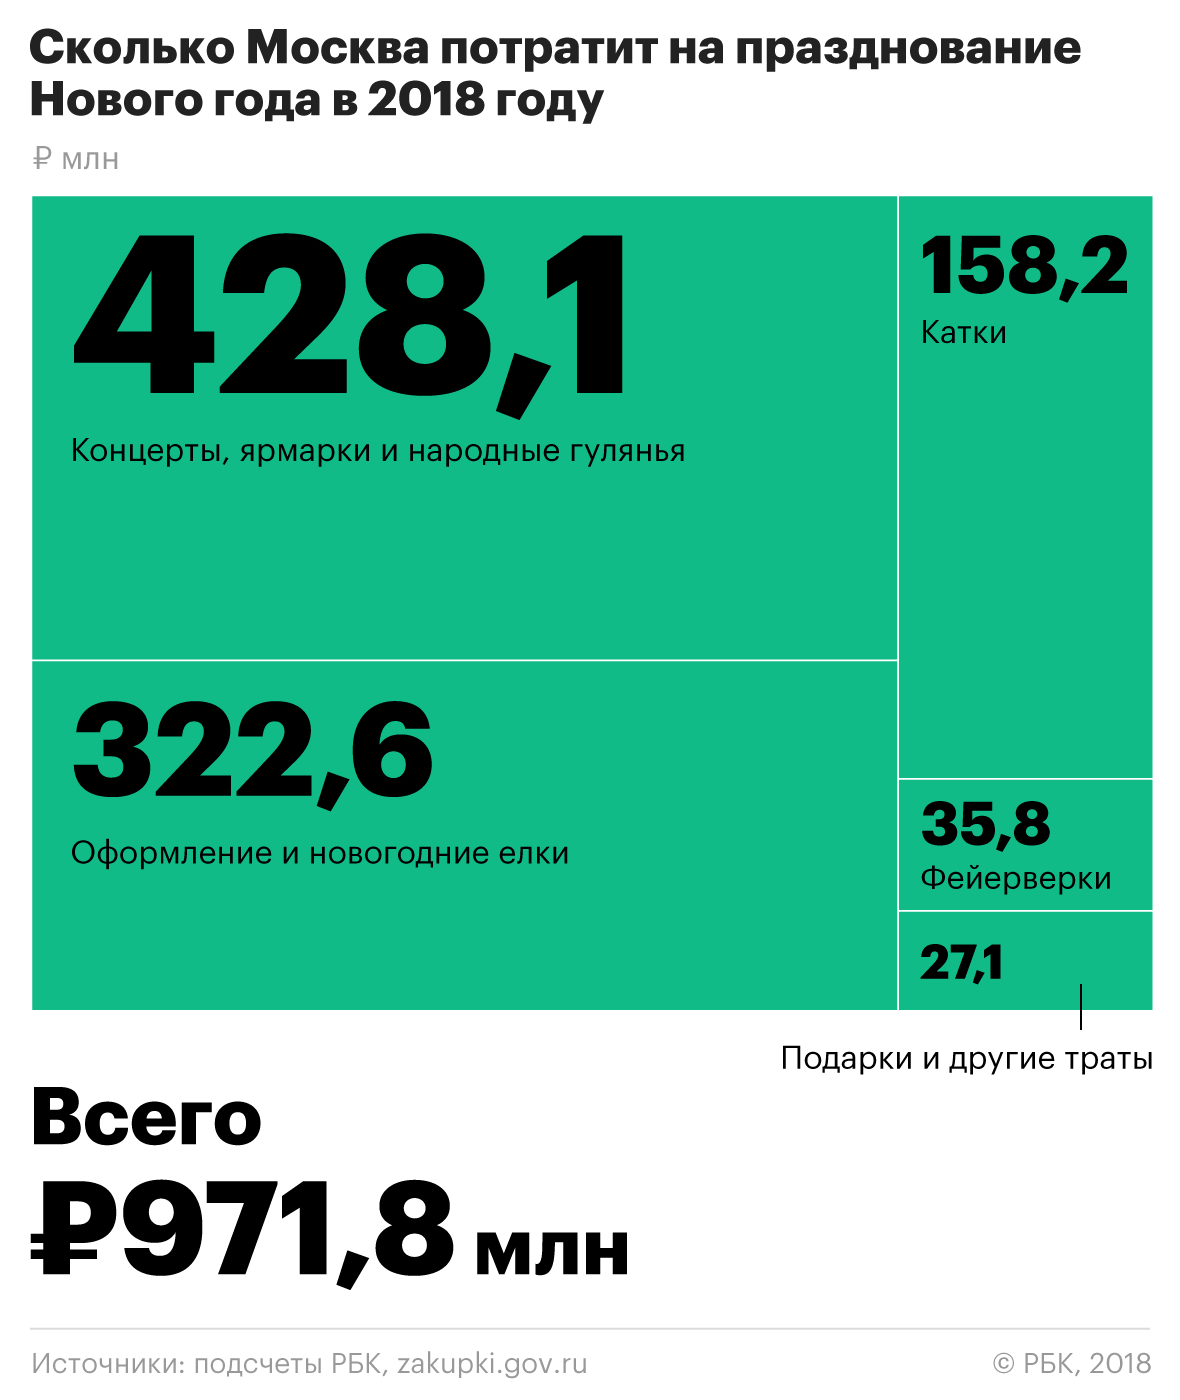 Московские власти потратят на Новый год около миллиарда рублей